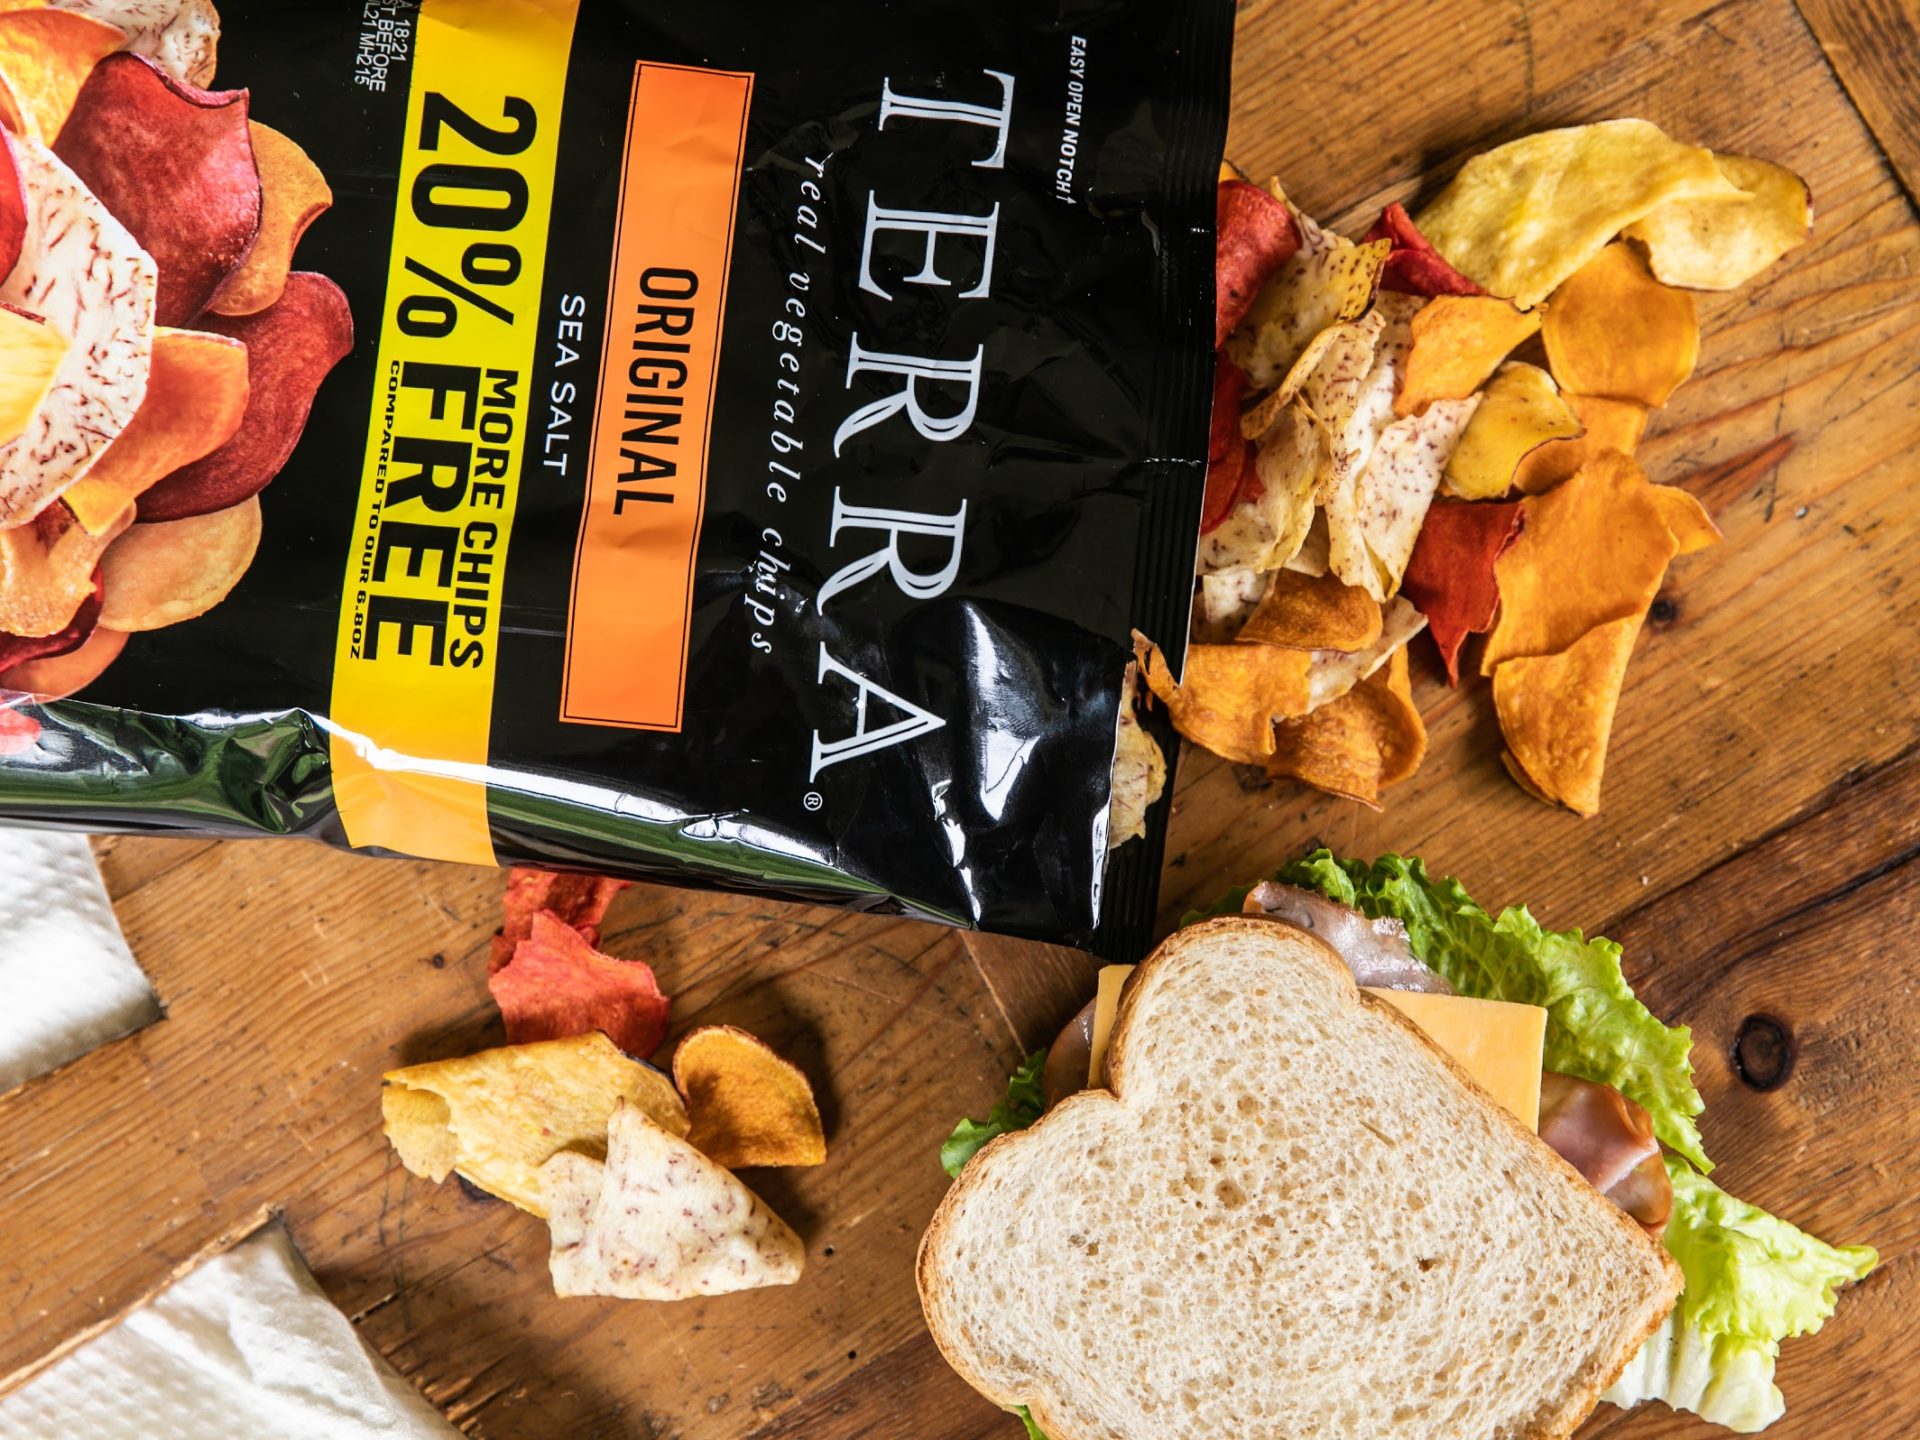 Terra Vegetable Chips Just $2.49 Per Bag At Kroger (Regluar Price $4.29)